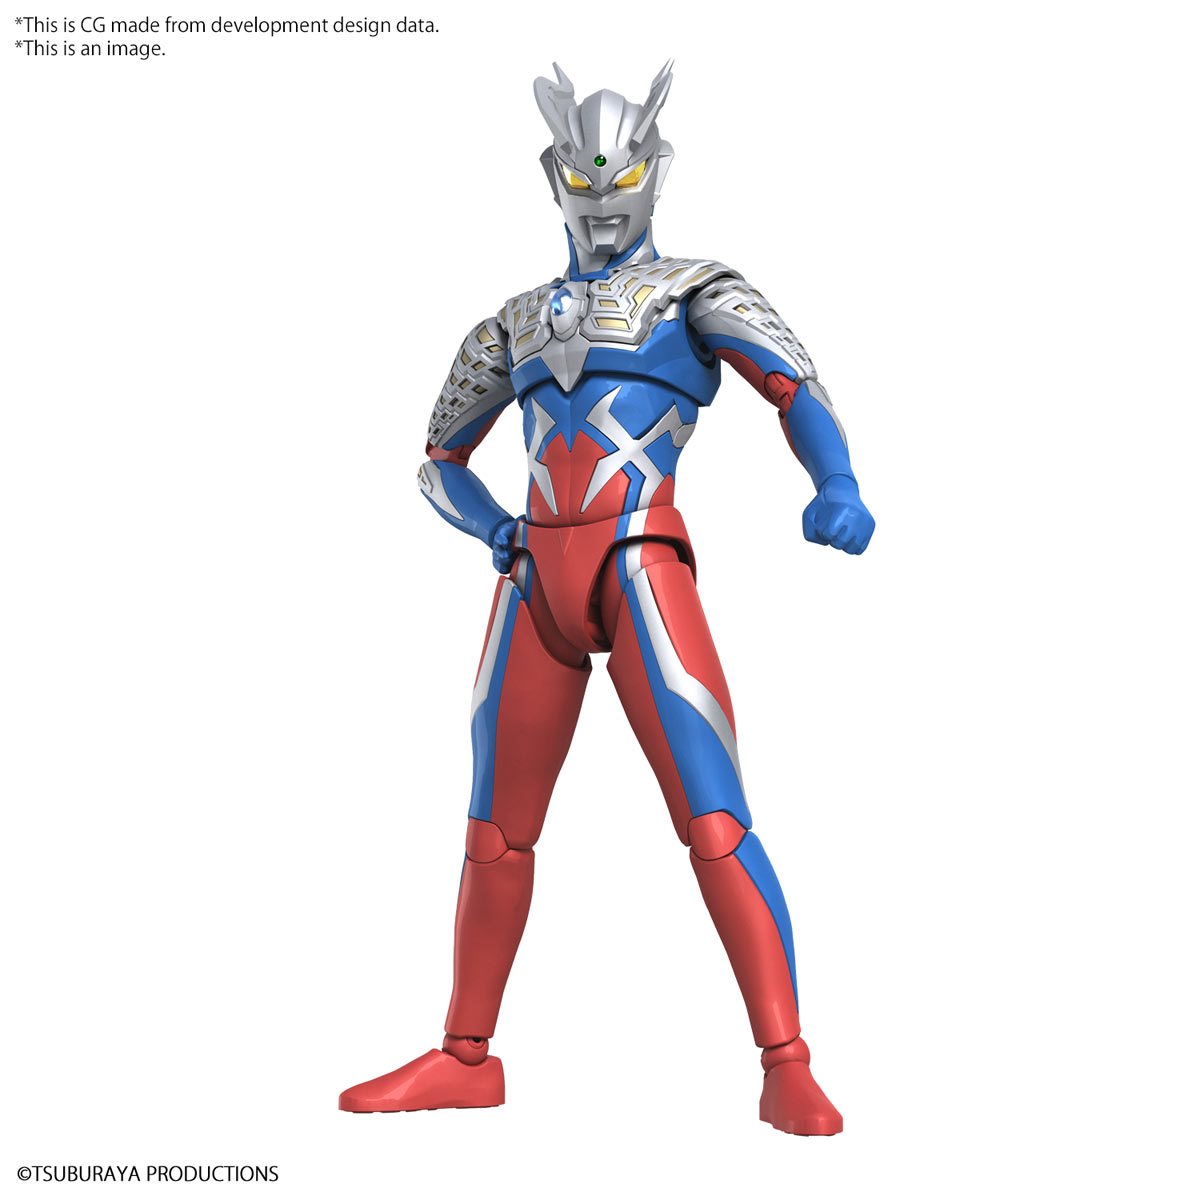 Ultraman Zero Figure-rise Standard Model Kit